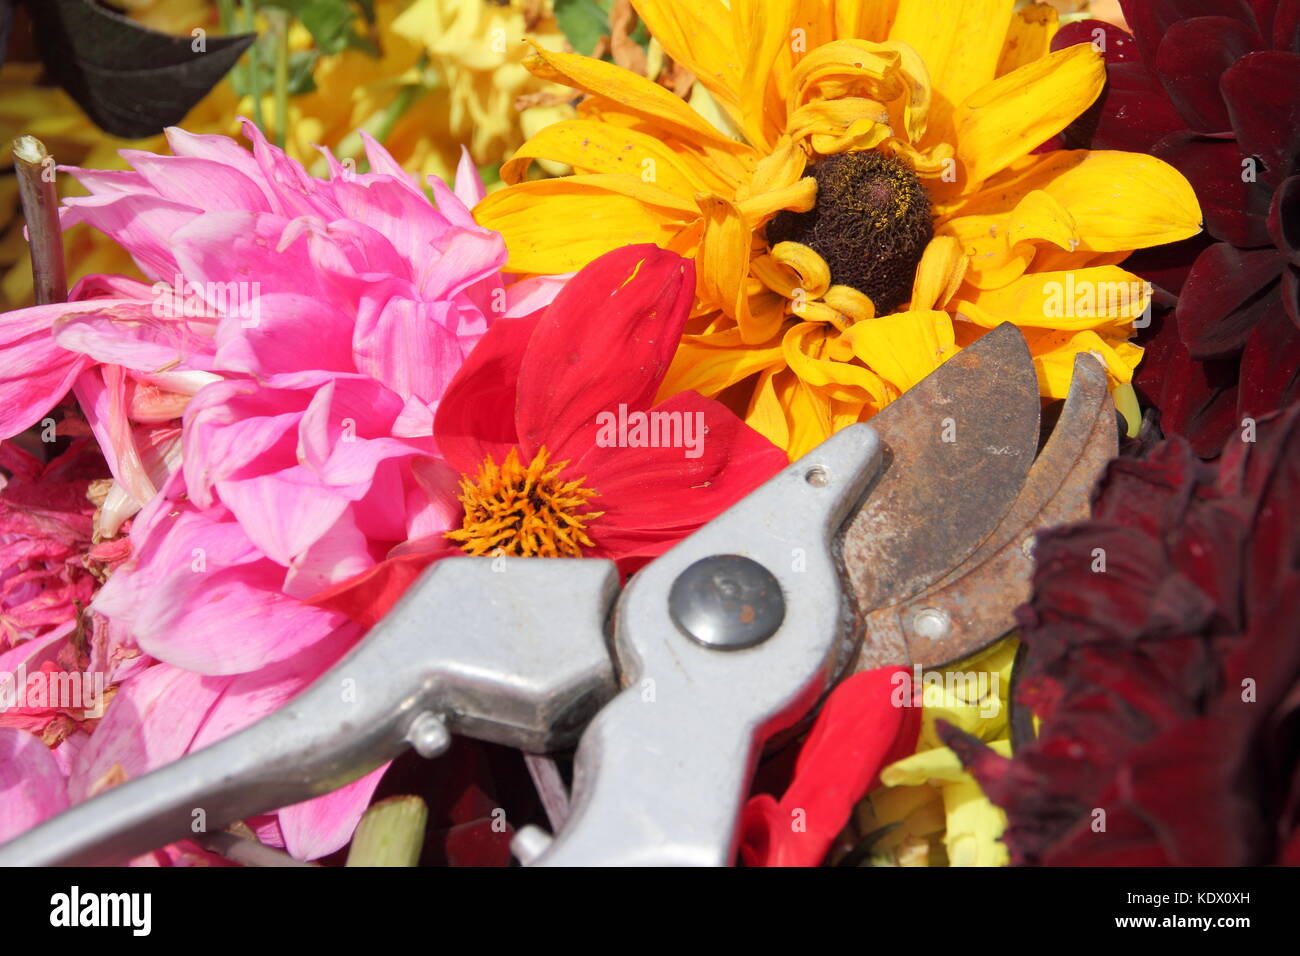 Vient buter des fleurs de dahlia, enlevé avec des sécateurs pour promouvoir la floraison continuelle dans un jardin anglais à la fin de l'été Banque D'Images